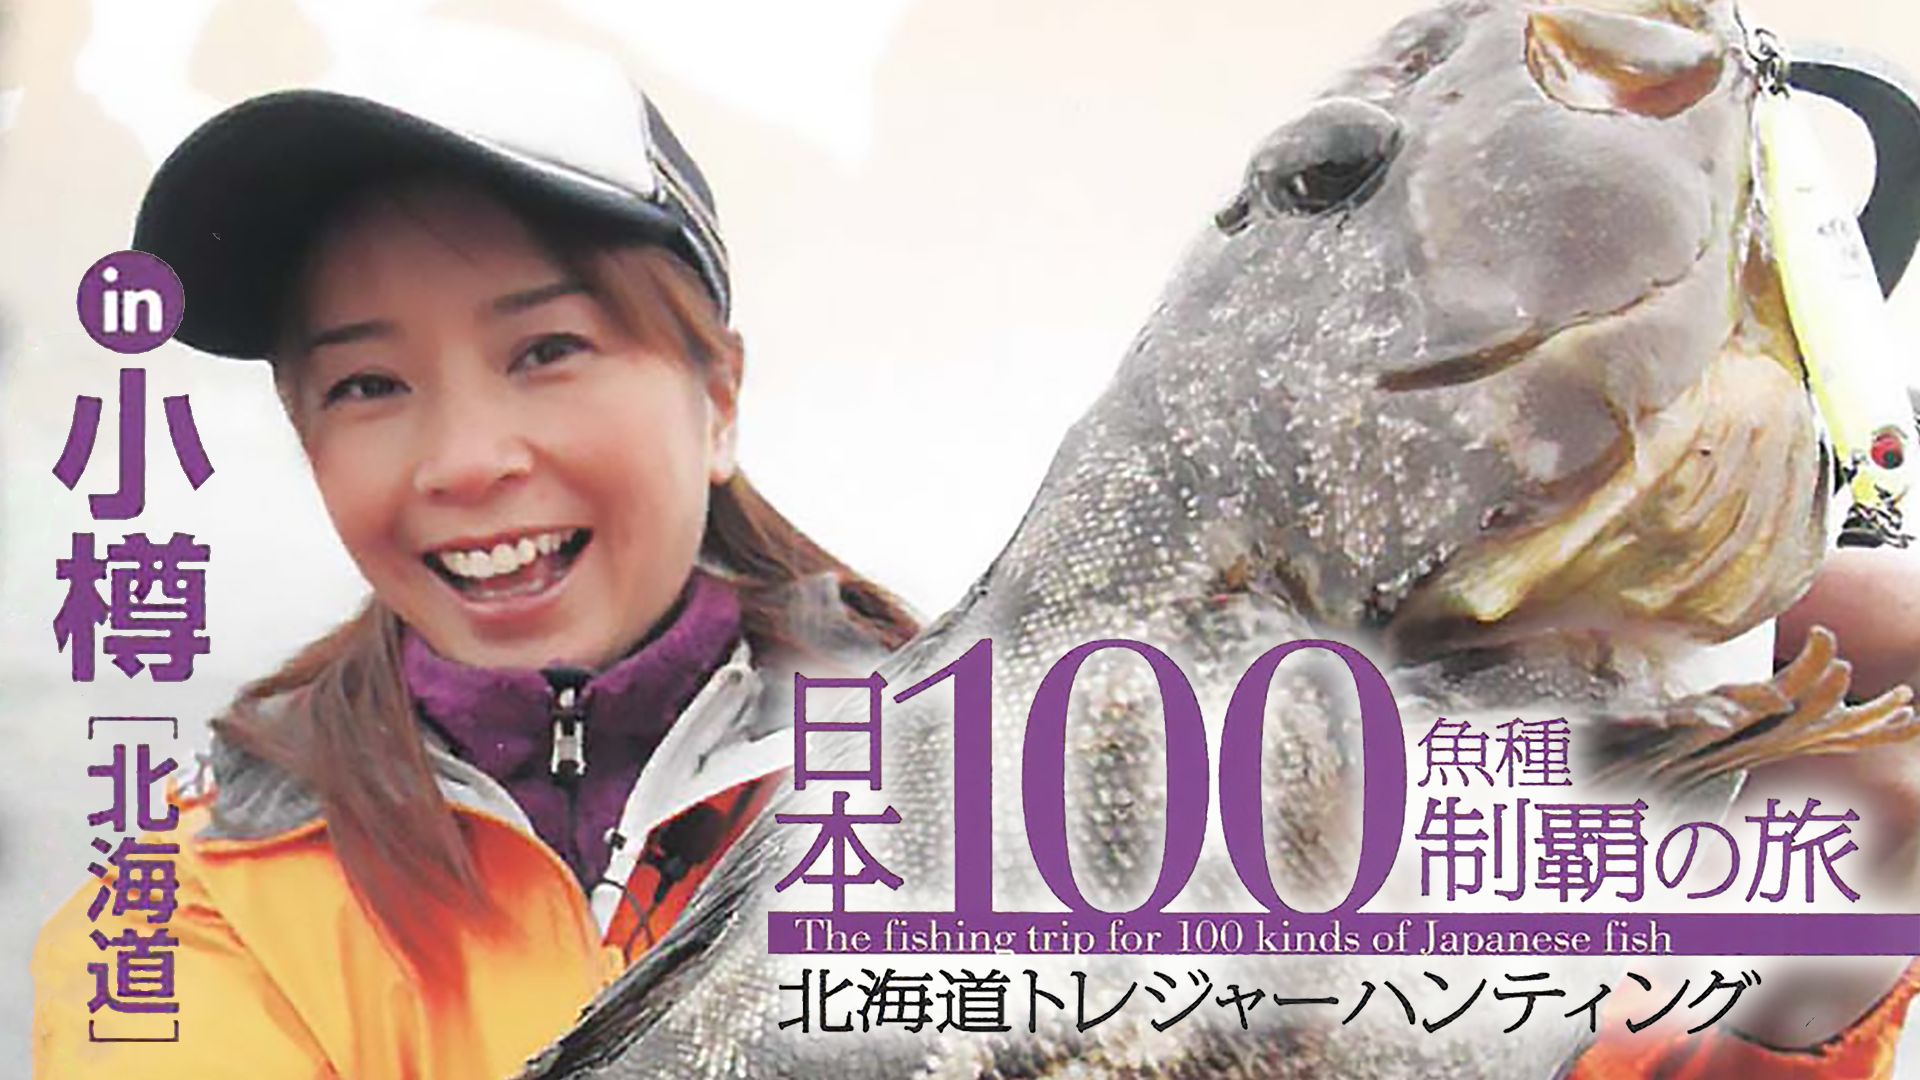 日本100魚種制覇の旅 北海道トレジャーハンティング in小樽(北海道)